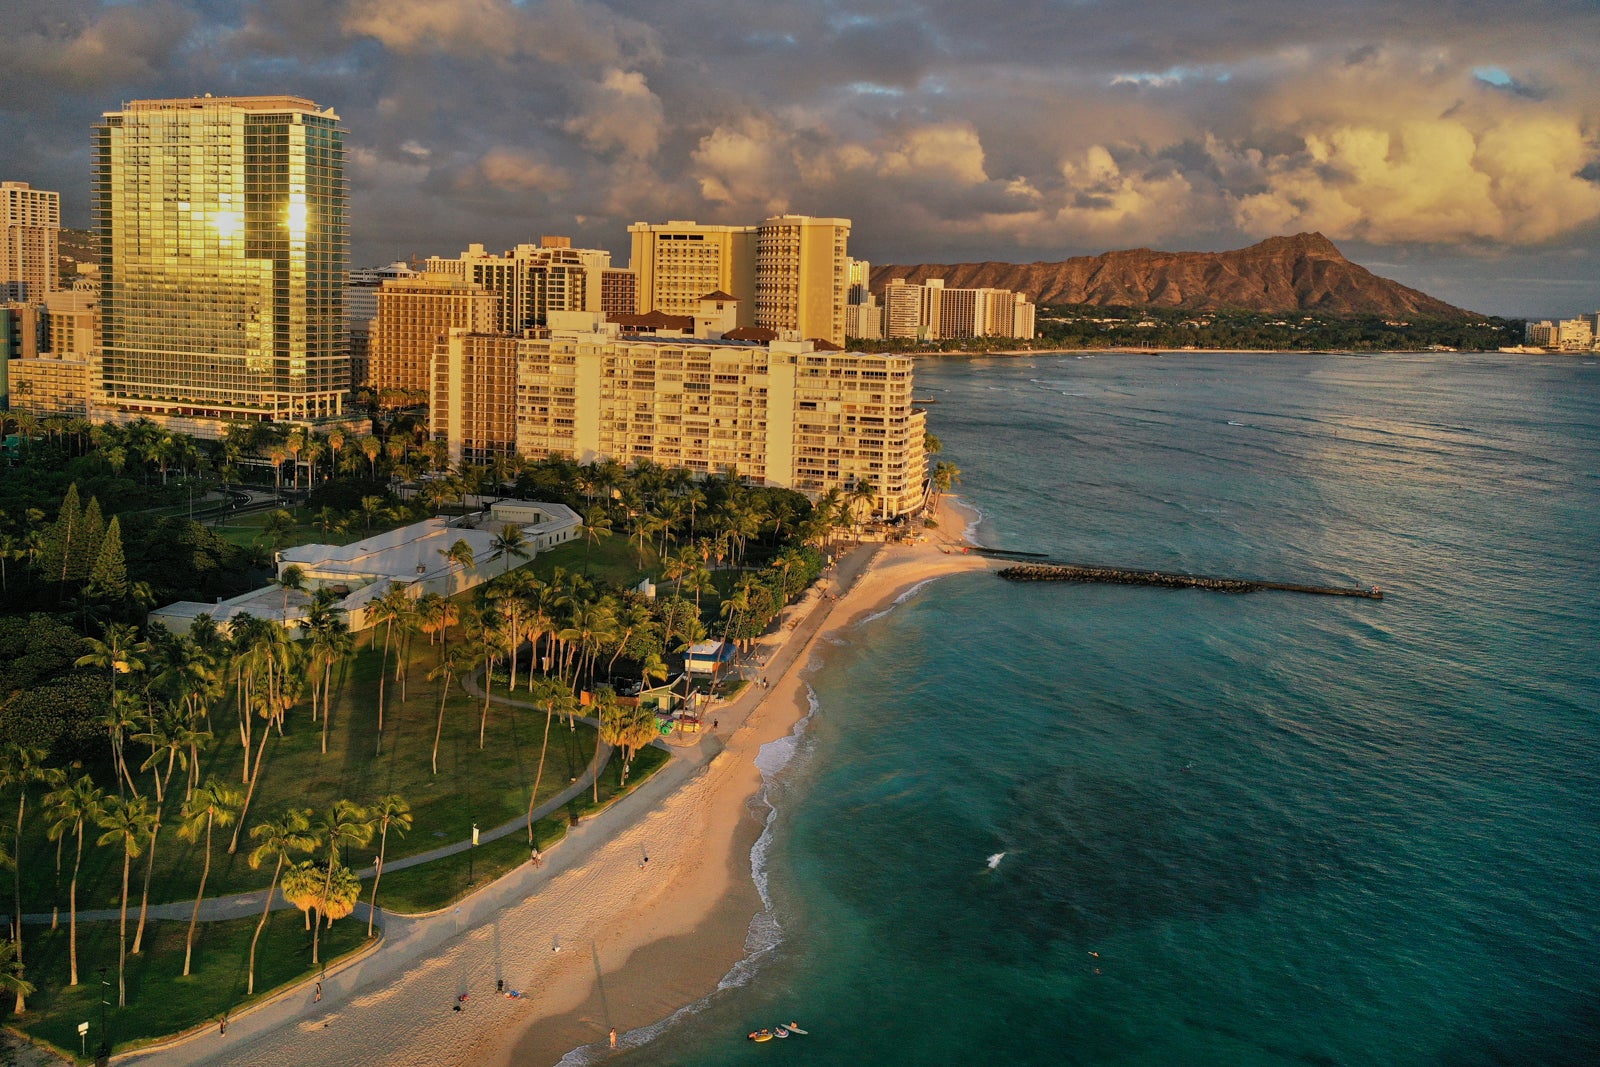 Hilton LXR Hawaii in Waikiki Beach